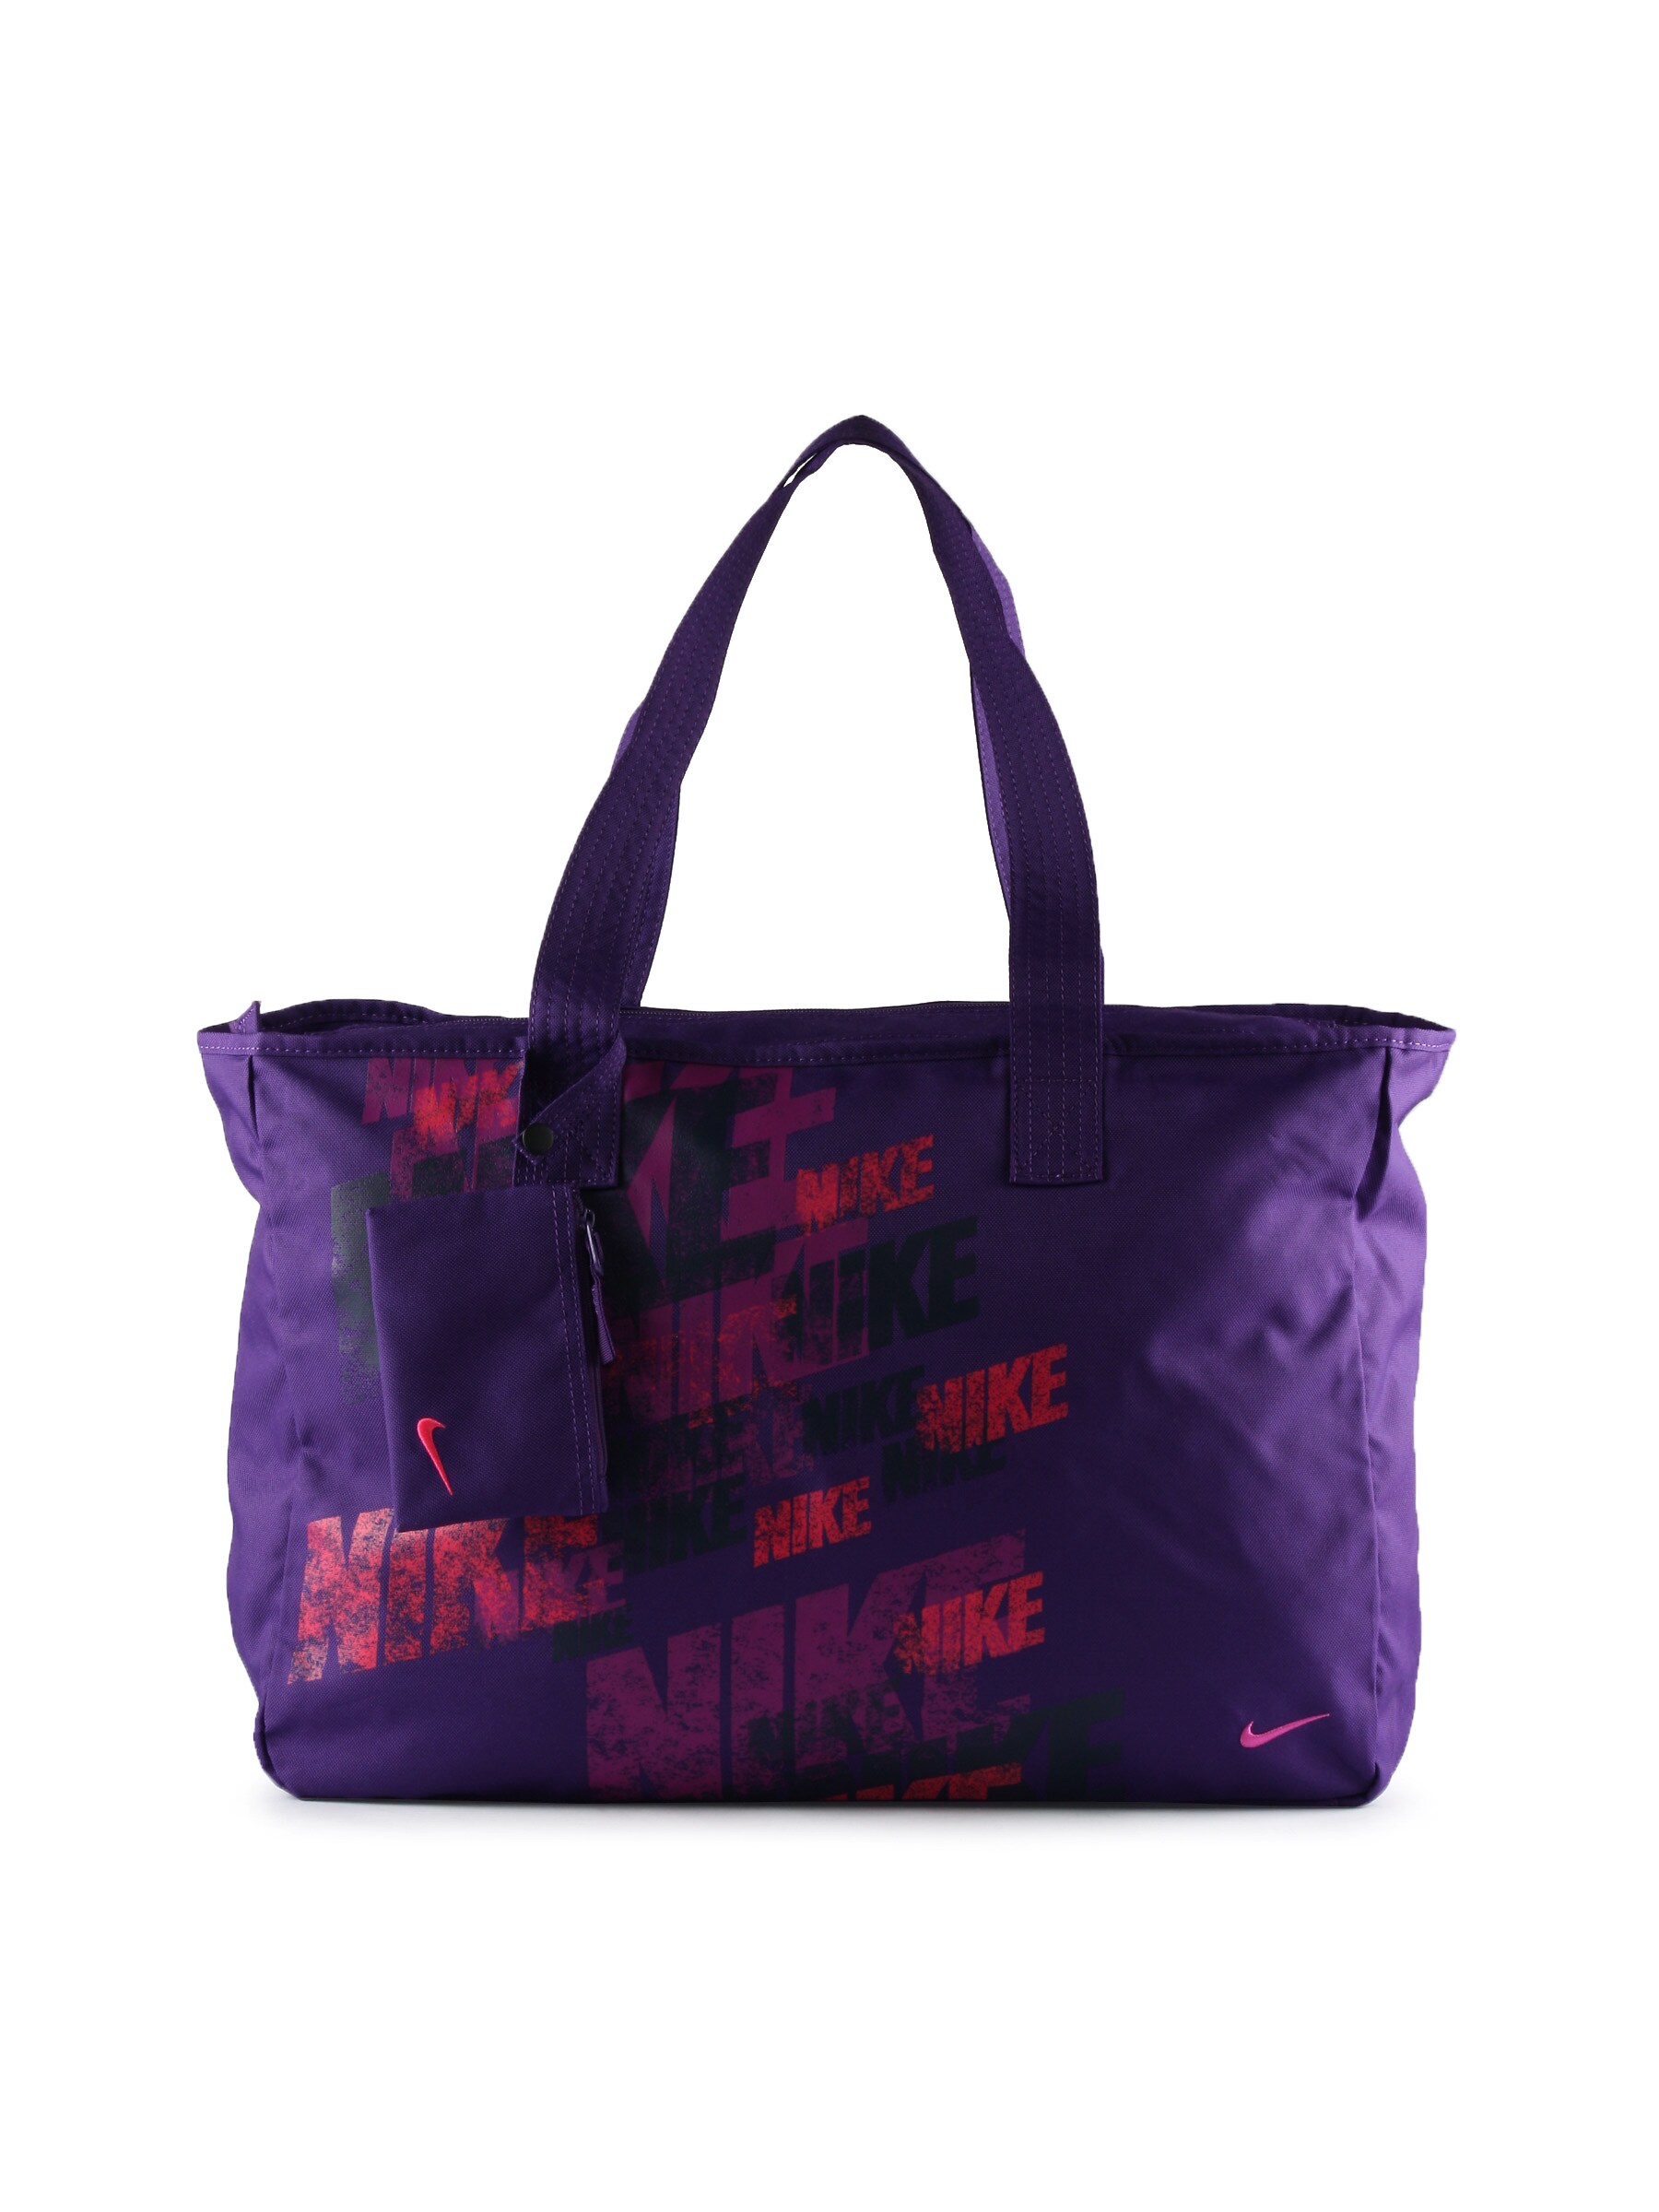 Nike Women Casual Purple Bag